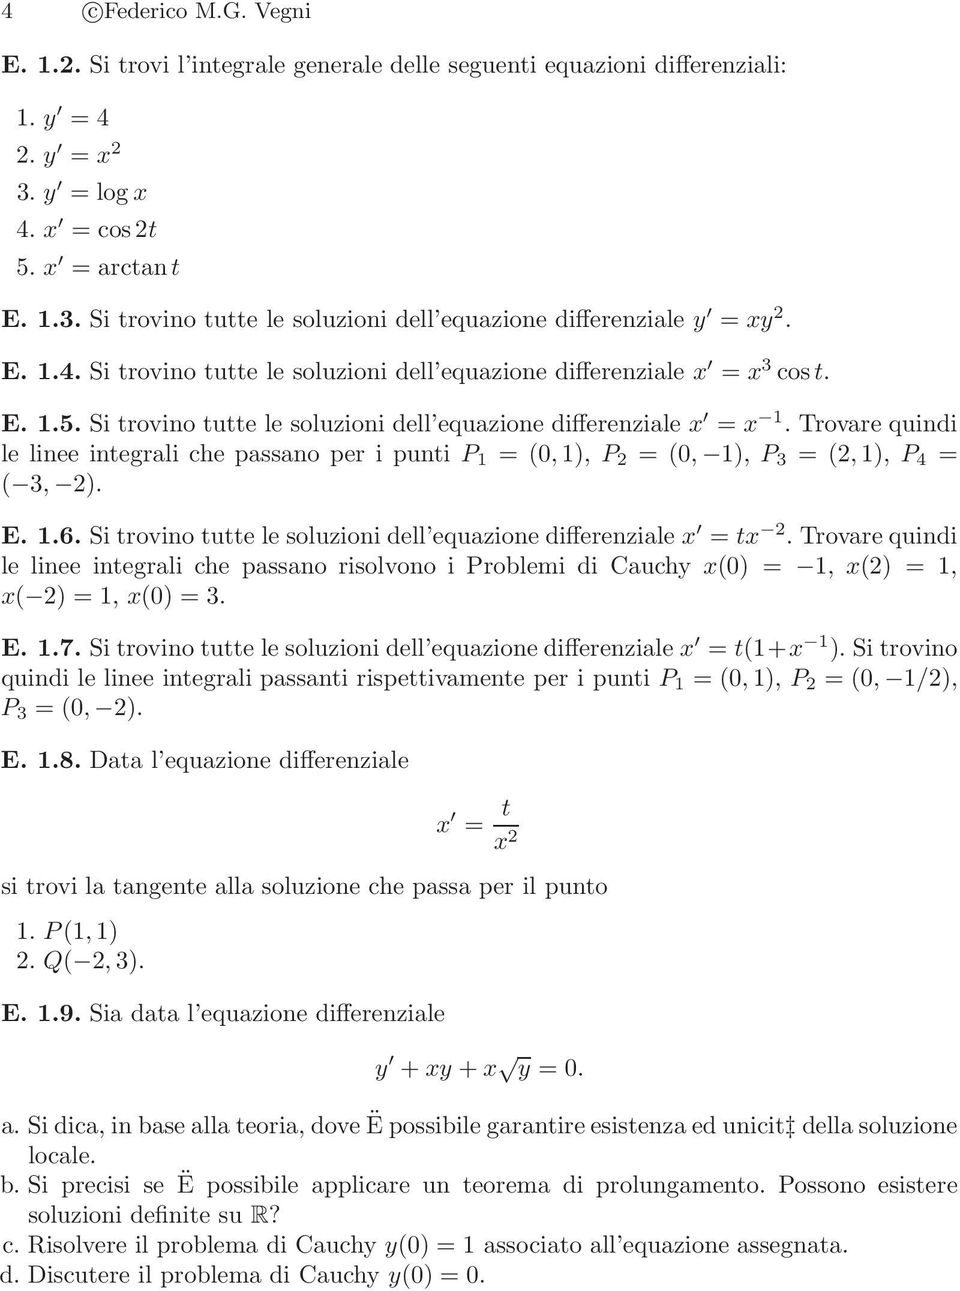 E..6. Si trovino tutte le soluzioni dell equazione differenziale x = tx. Trovarequindi le linee integrali che passano risolvono i Problemi di Cauchy x() =, x() =, x( ) =, x() = 3. E..7.